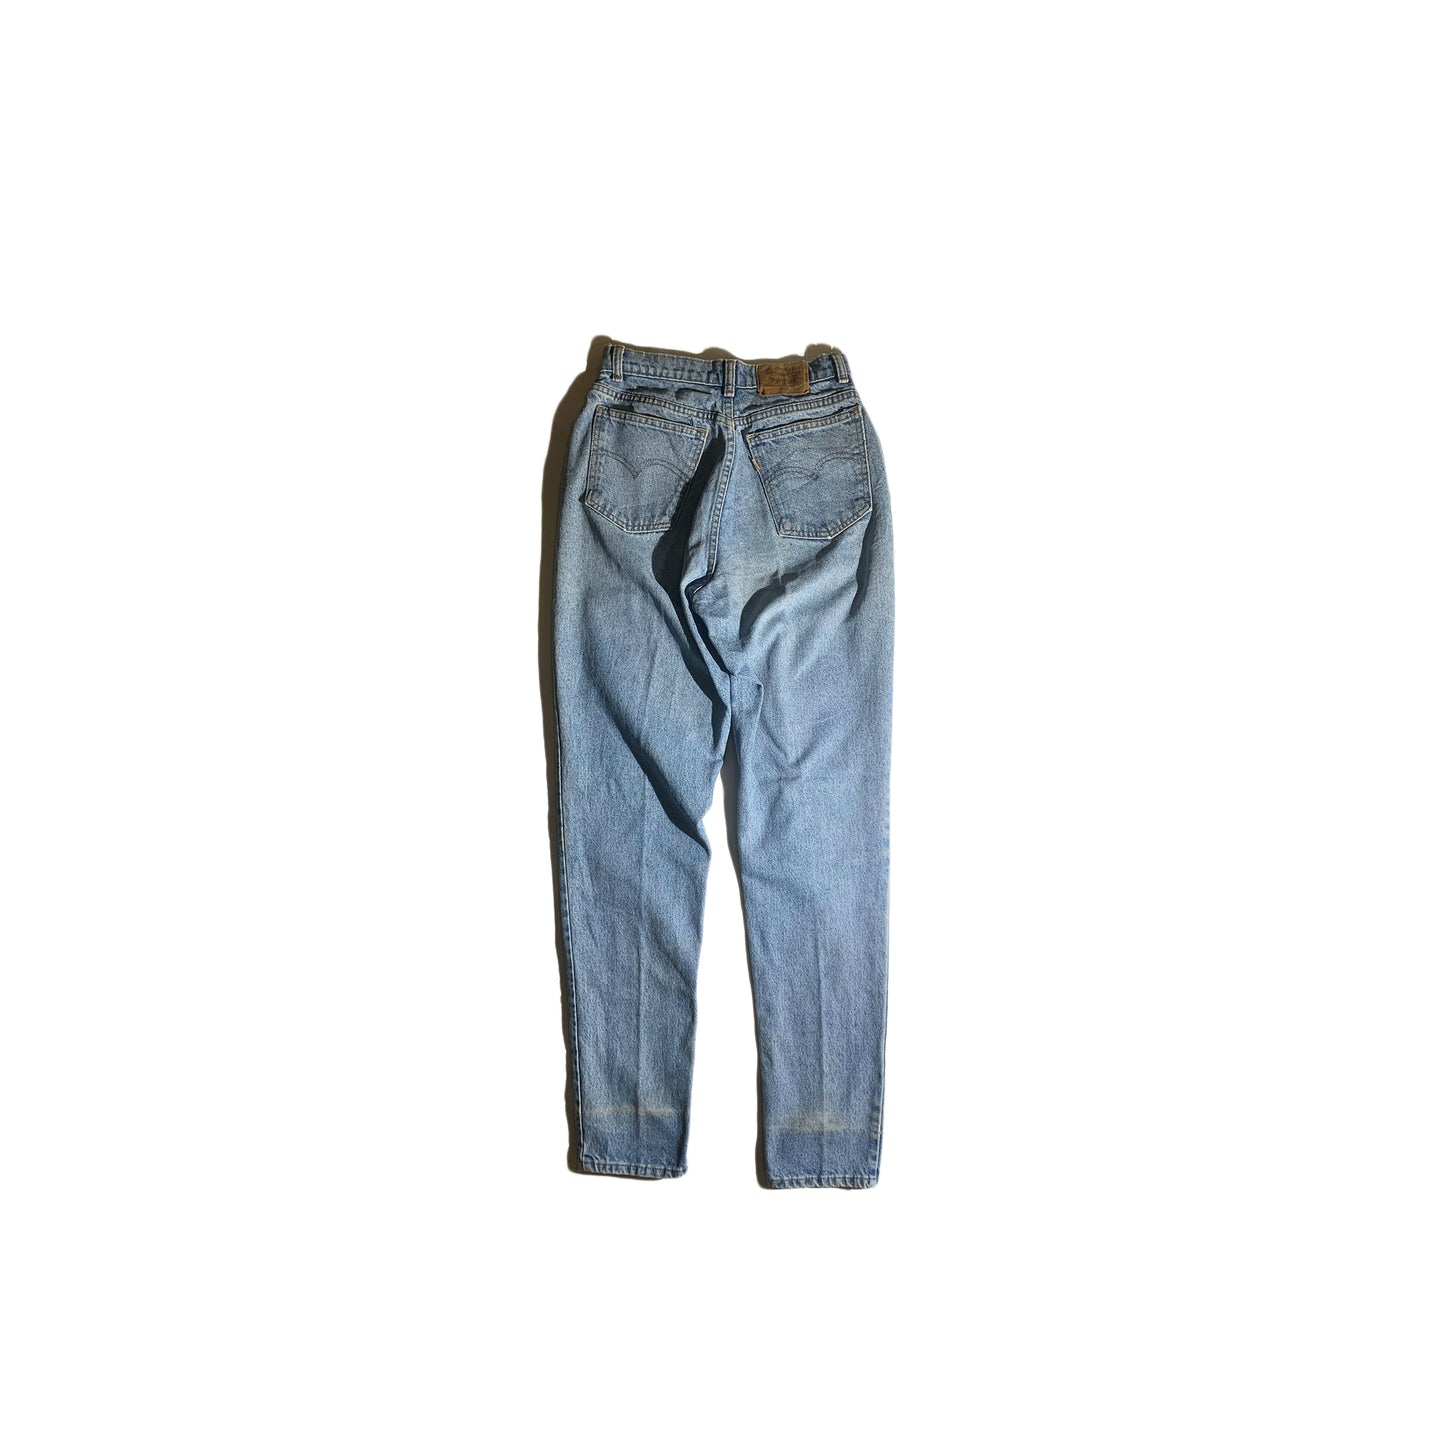 Vintage Levi Jeans 816